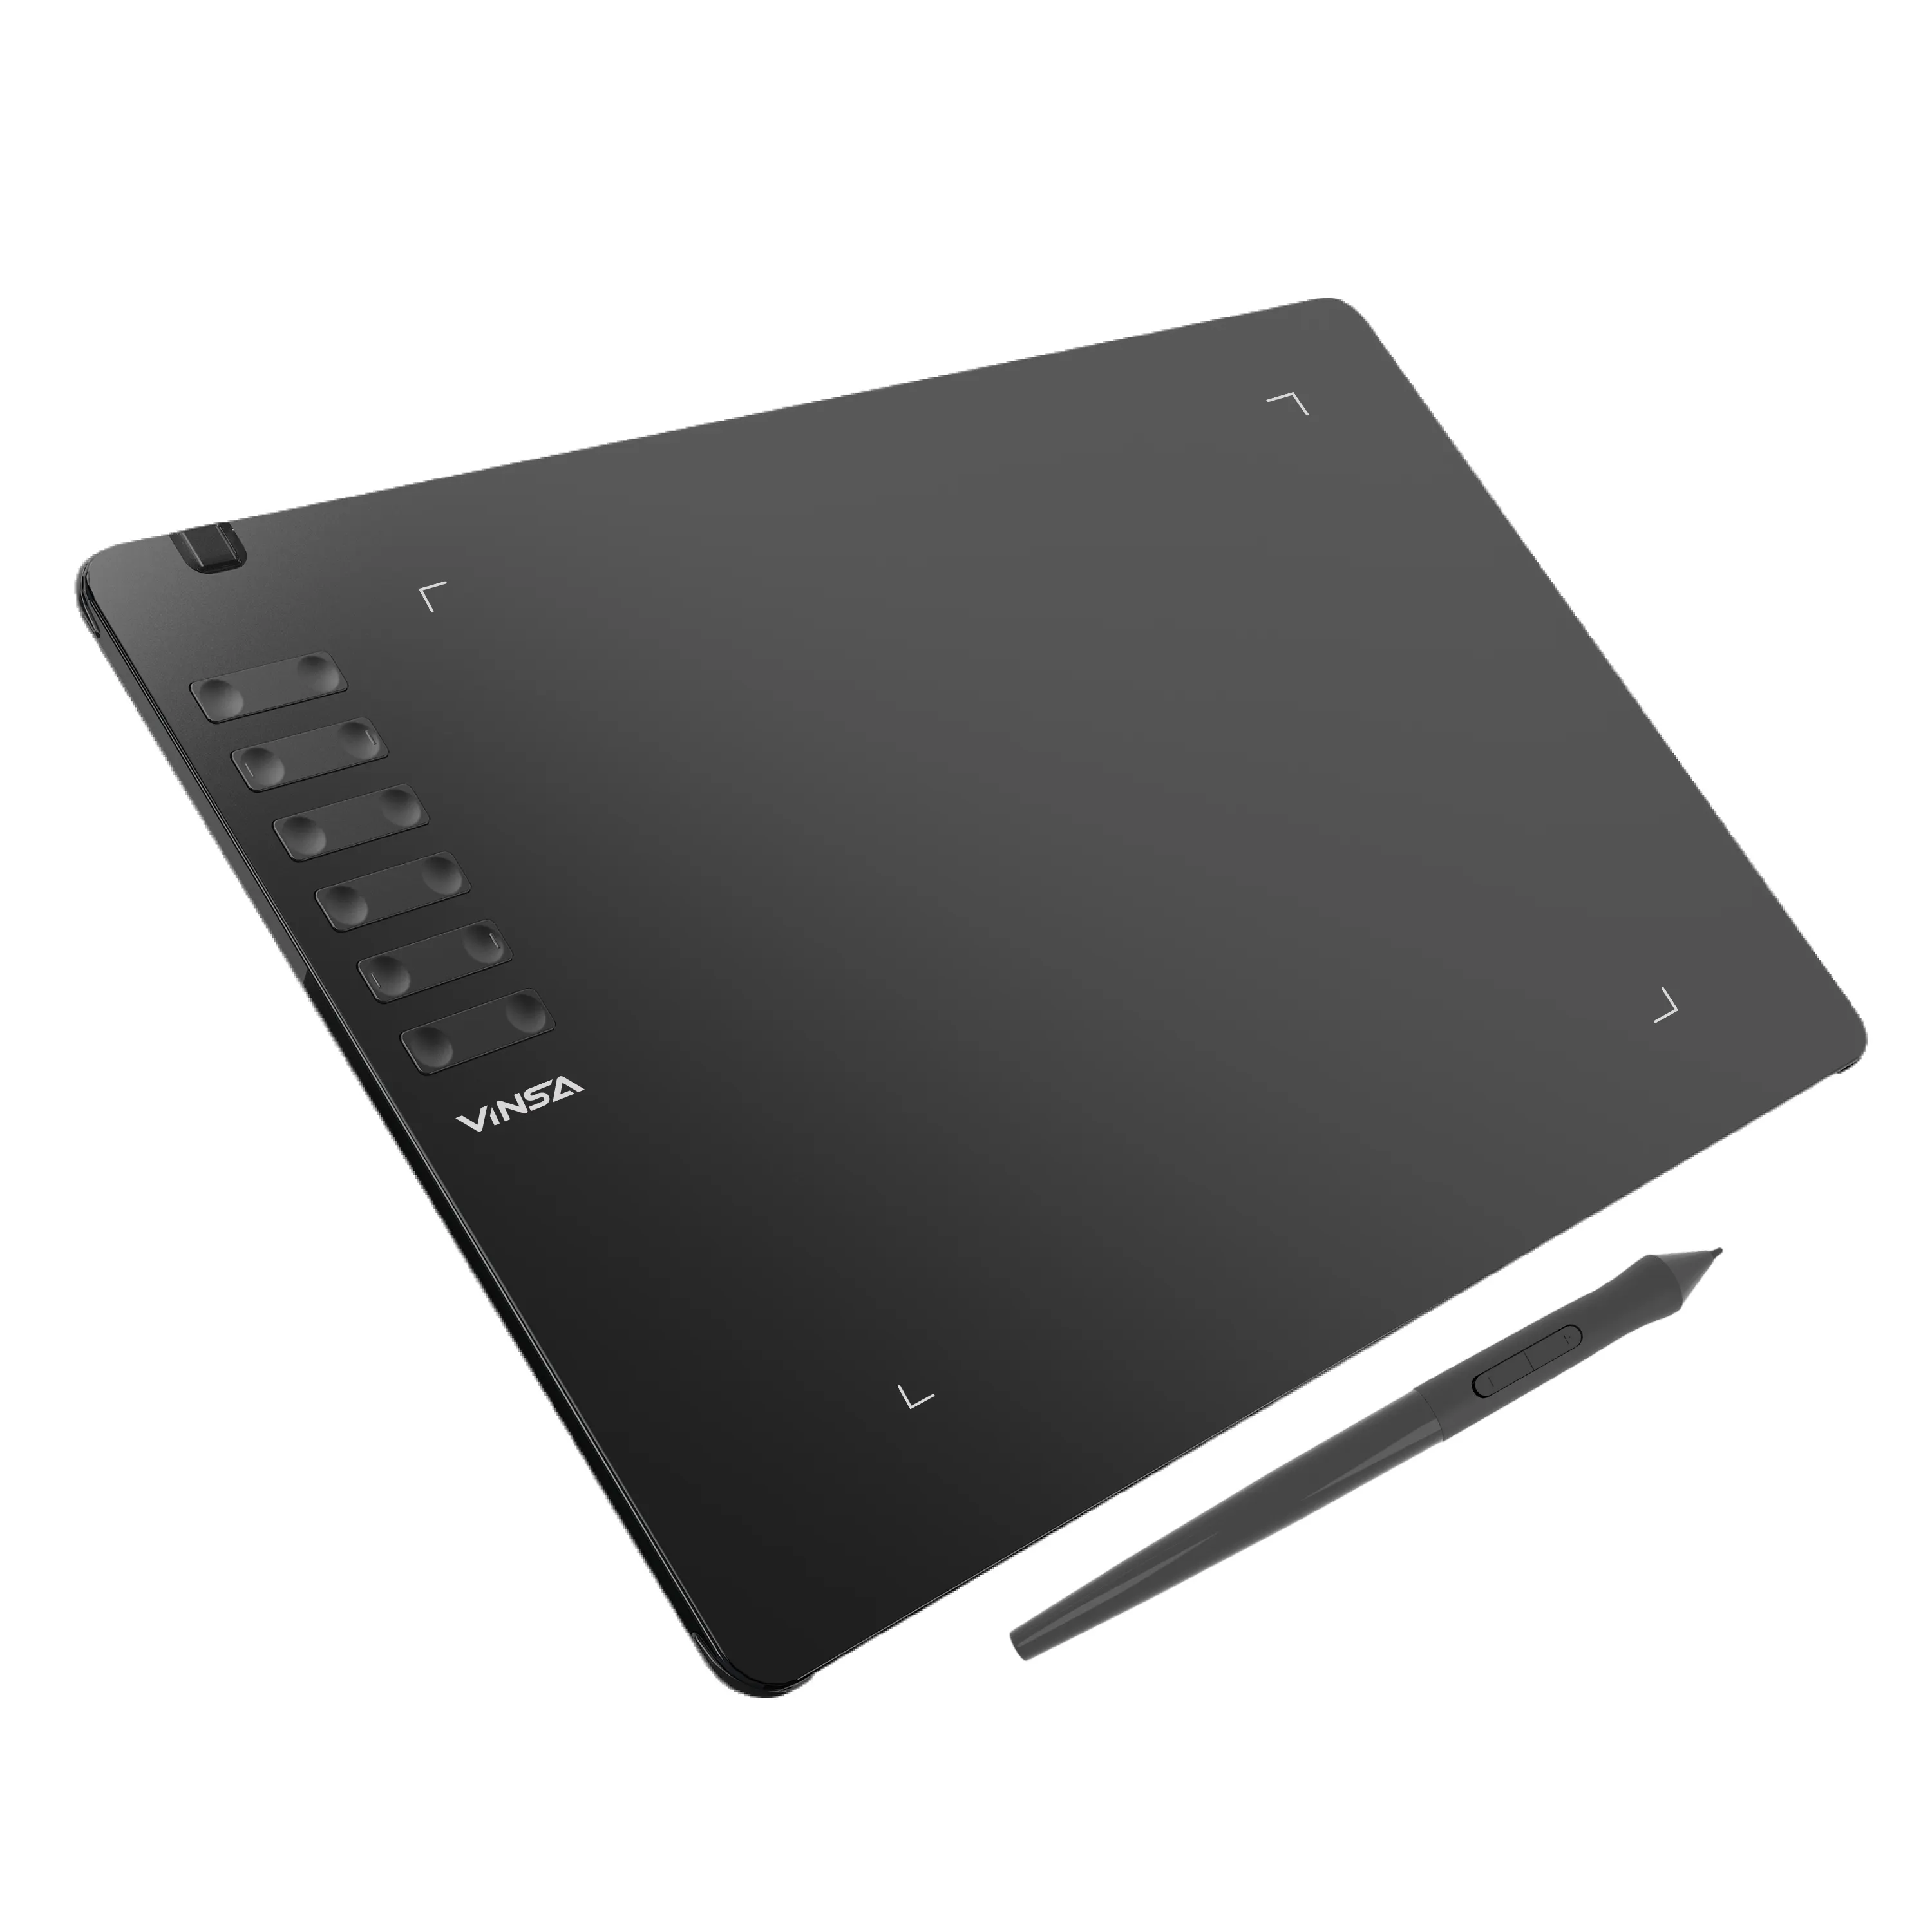 Yeni varış! VINSA T1161 tasarım Tablet yüksek çözünürlüklü pasif Emr Stylus grafik çizim tableti Pad ile dijital kalem